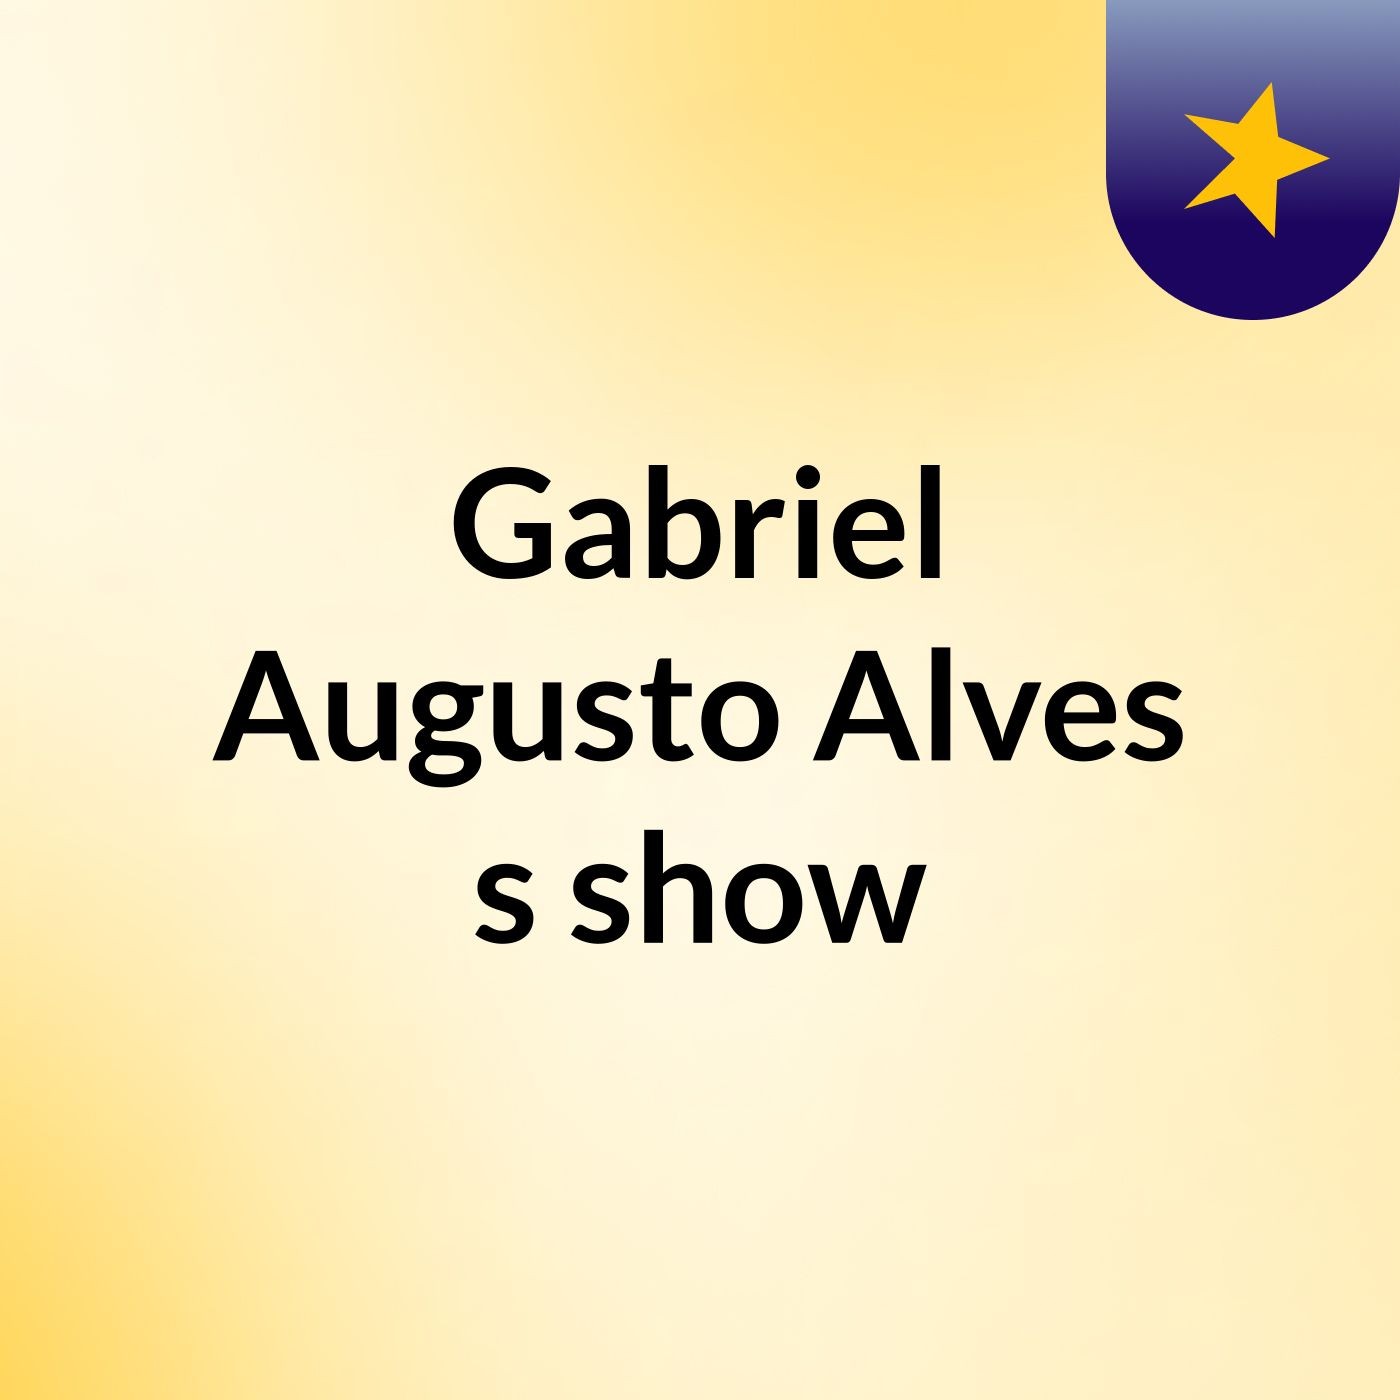 Gabriel Augusto Alves's show